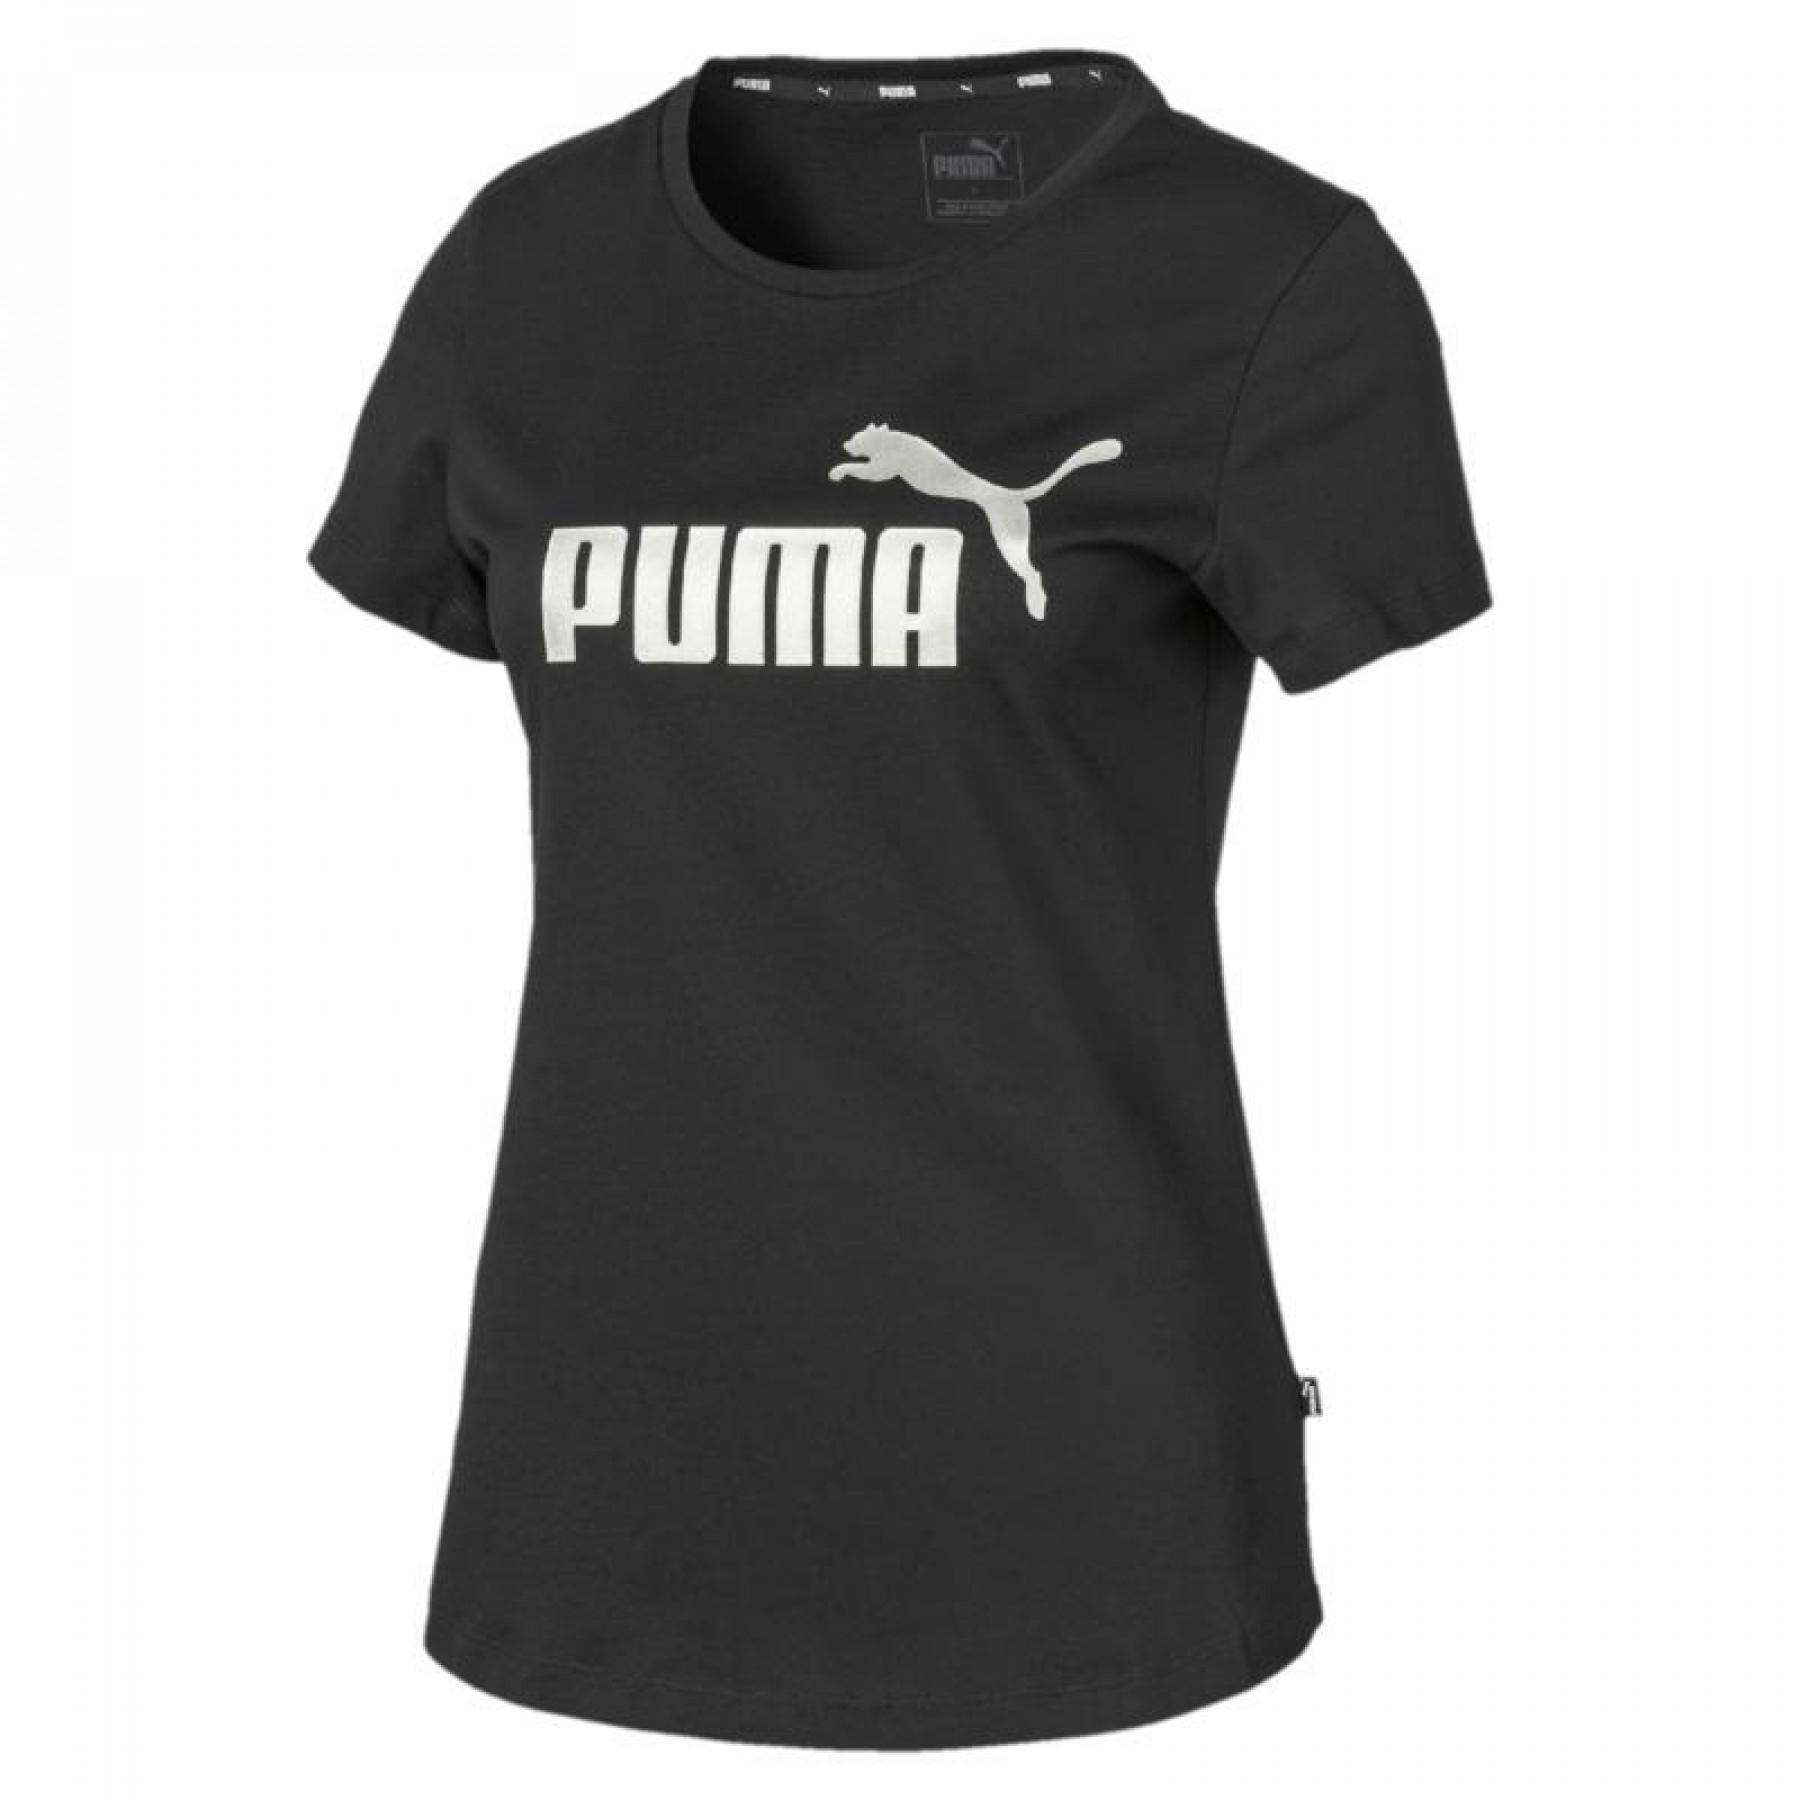 Women's T-shirt Puma essential